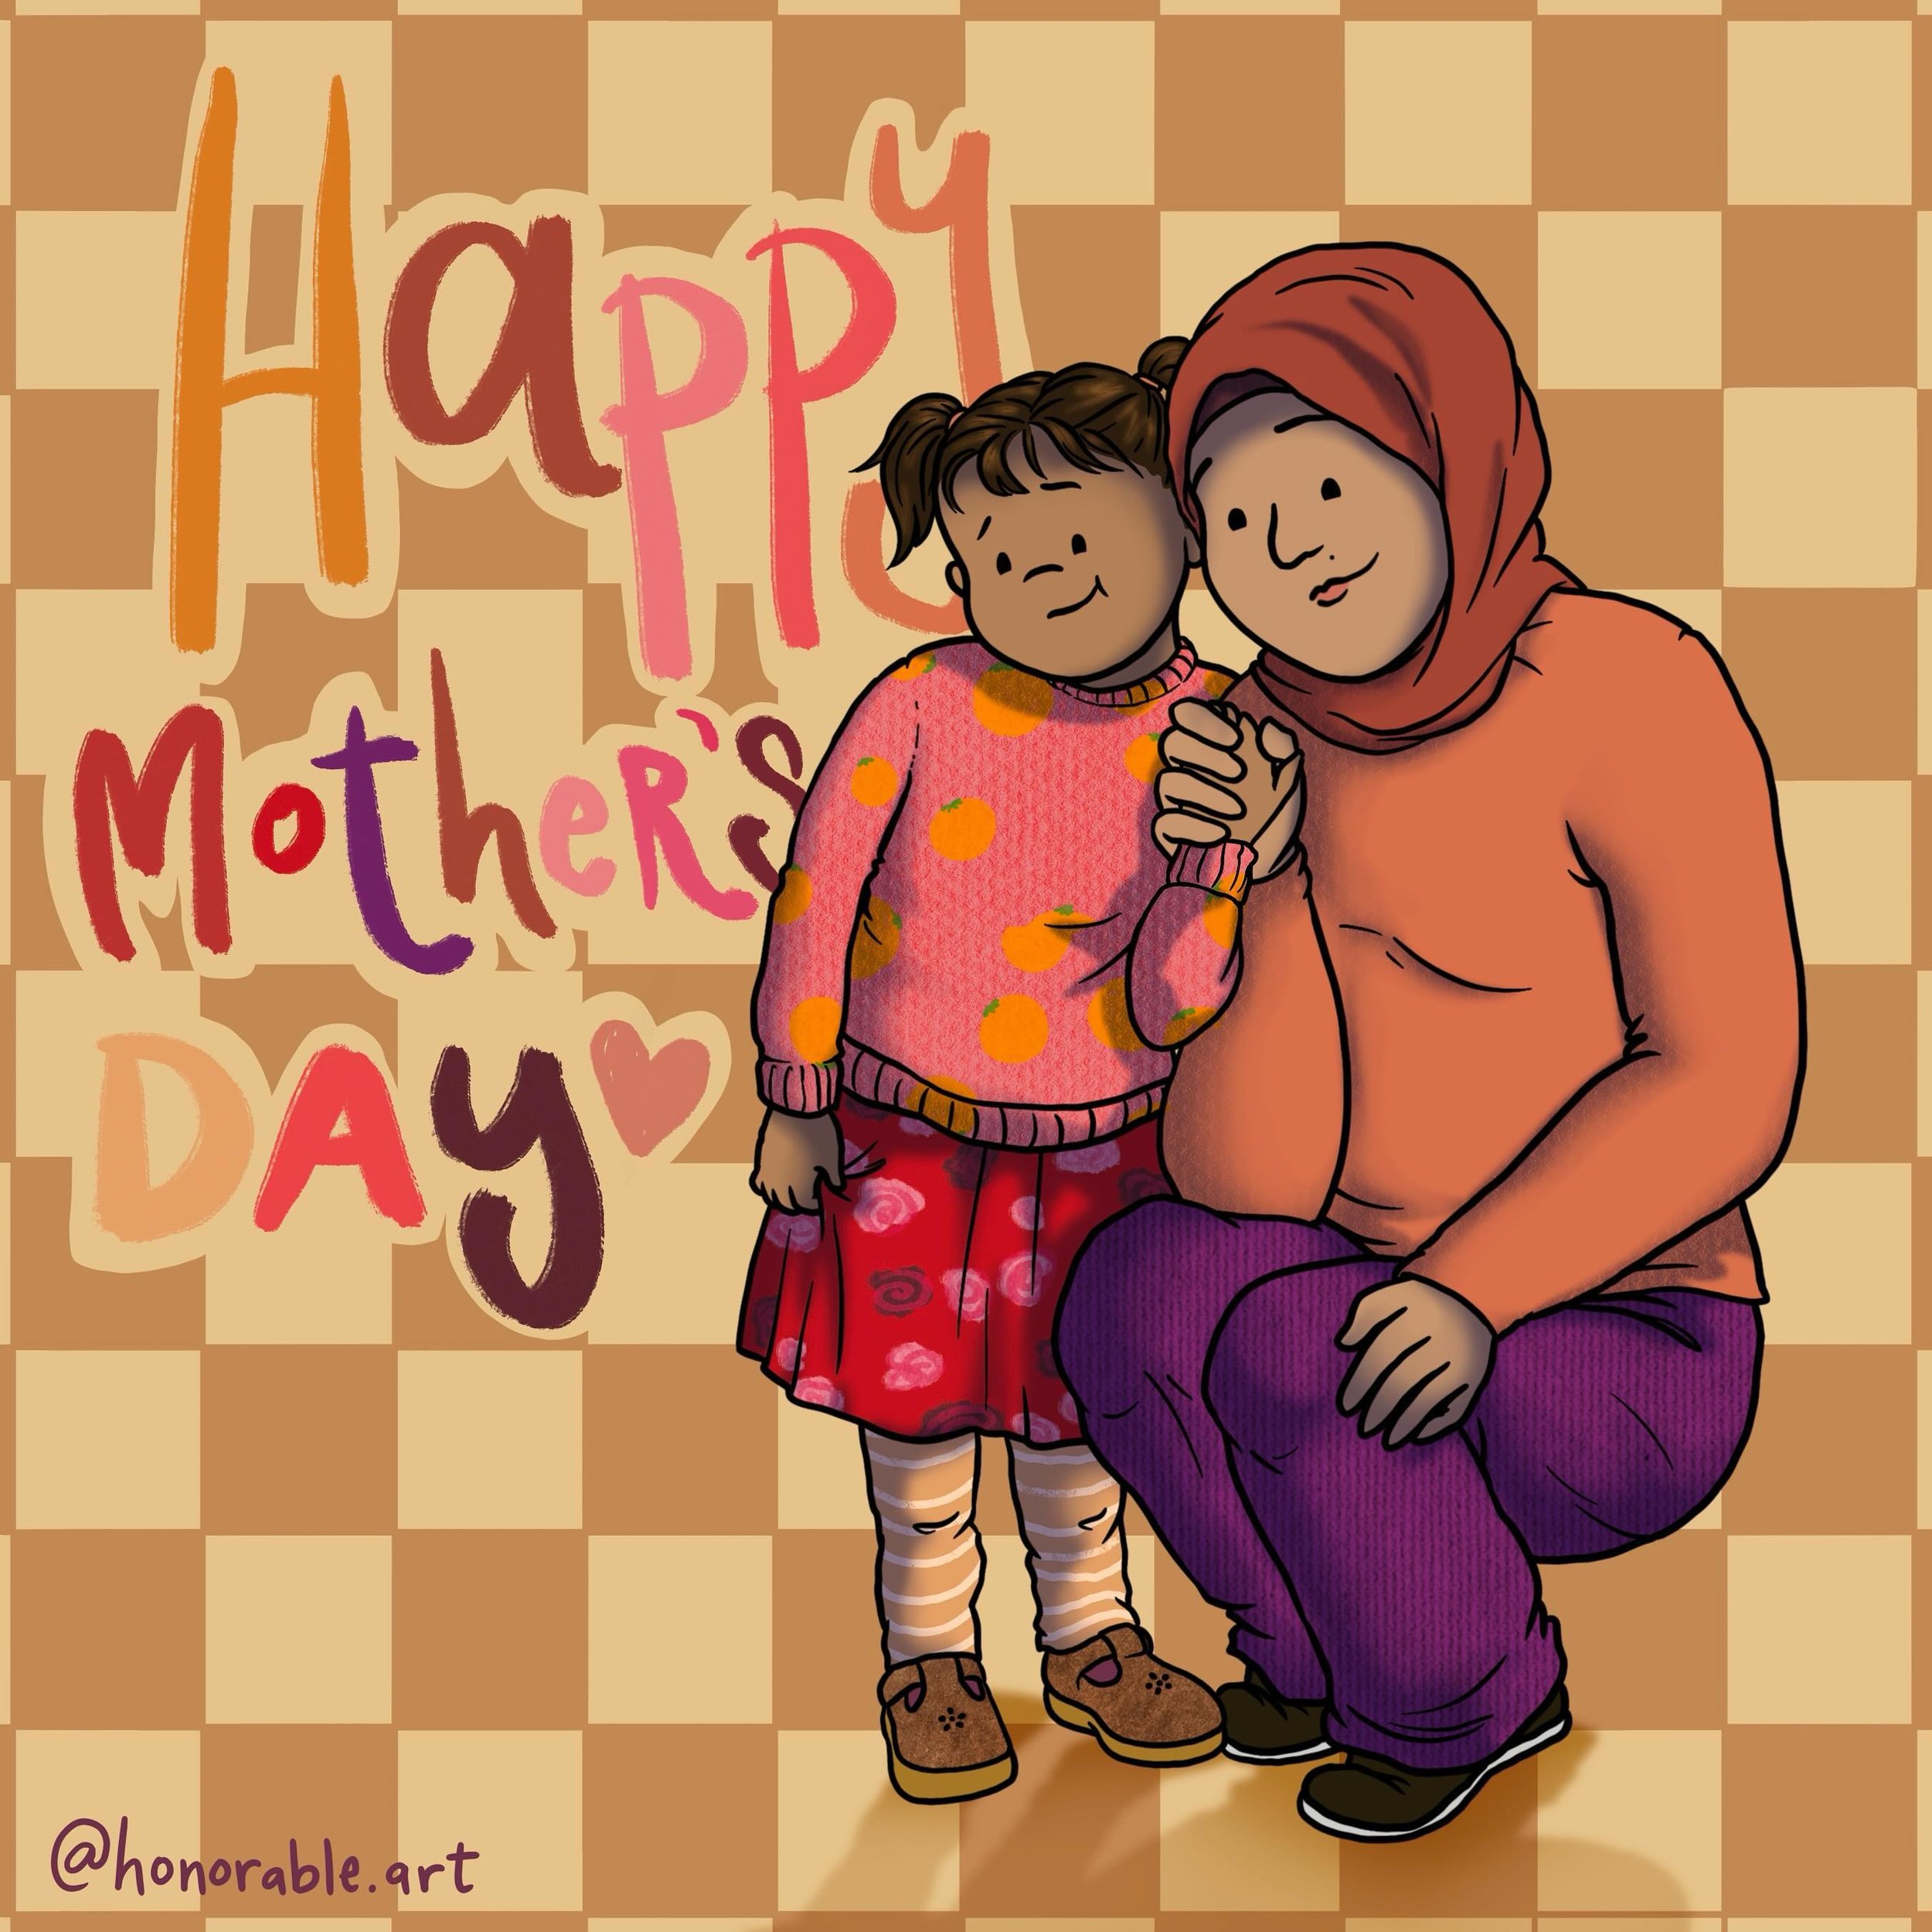 It&rsquo;s #mothersday !
#art #digitalart #illustration #childrensbookillustration #mom #cartoons #cartoonist #illustrator #digitalartist